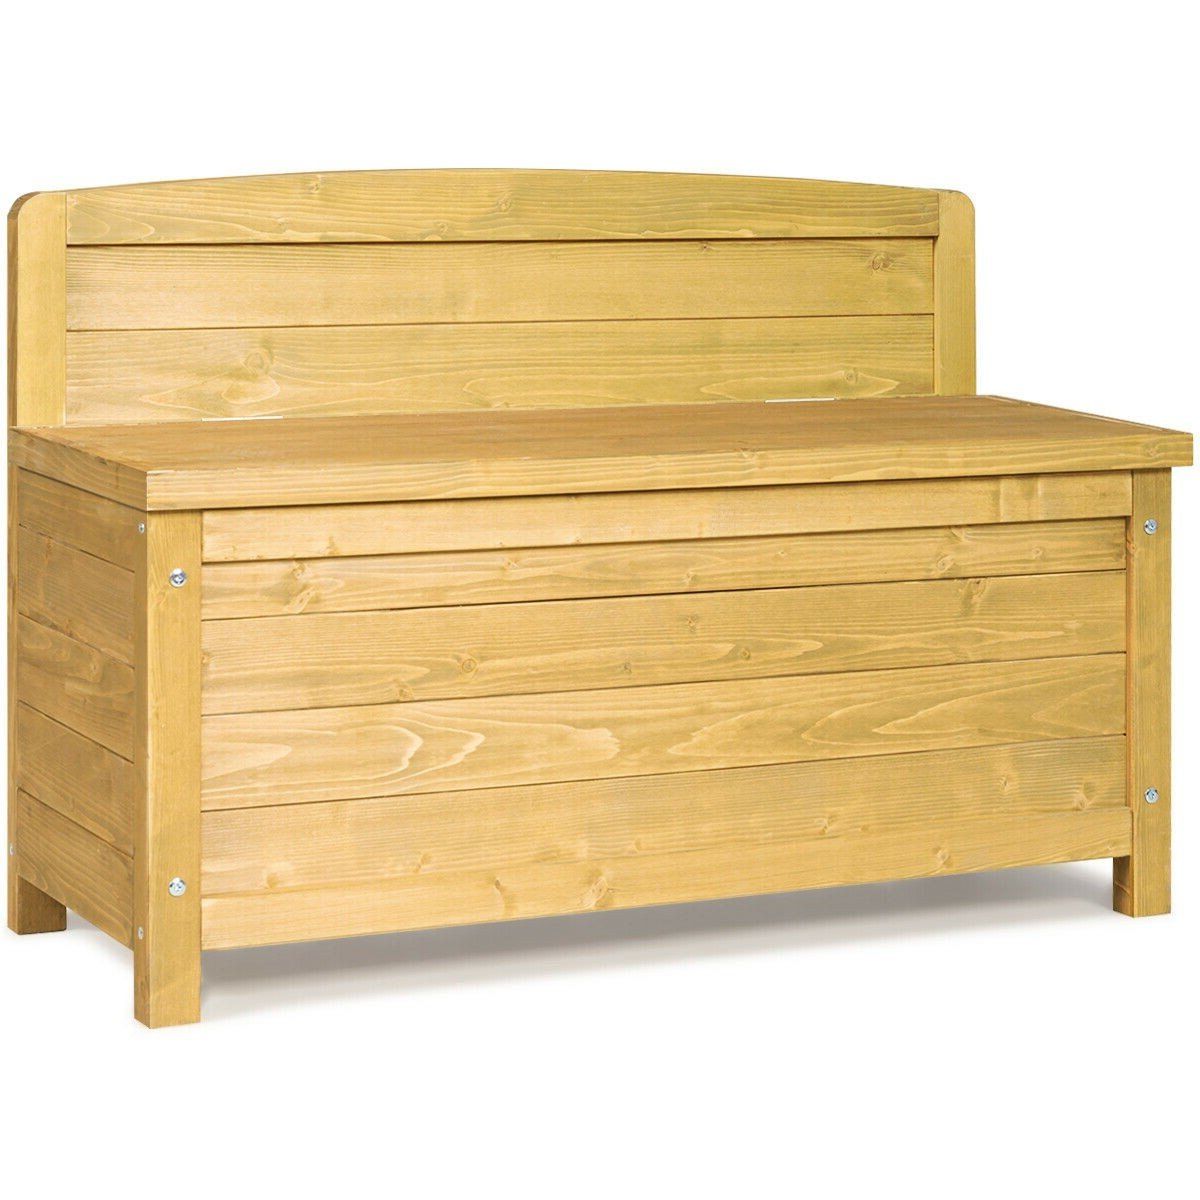 Most Popular Hedgepeth Fir Storage Bench In Skoog Chevron Wooden Storage Benches (View 10 of 30)